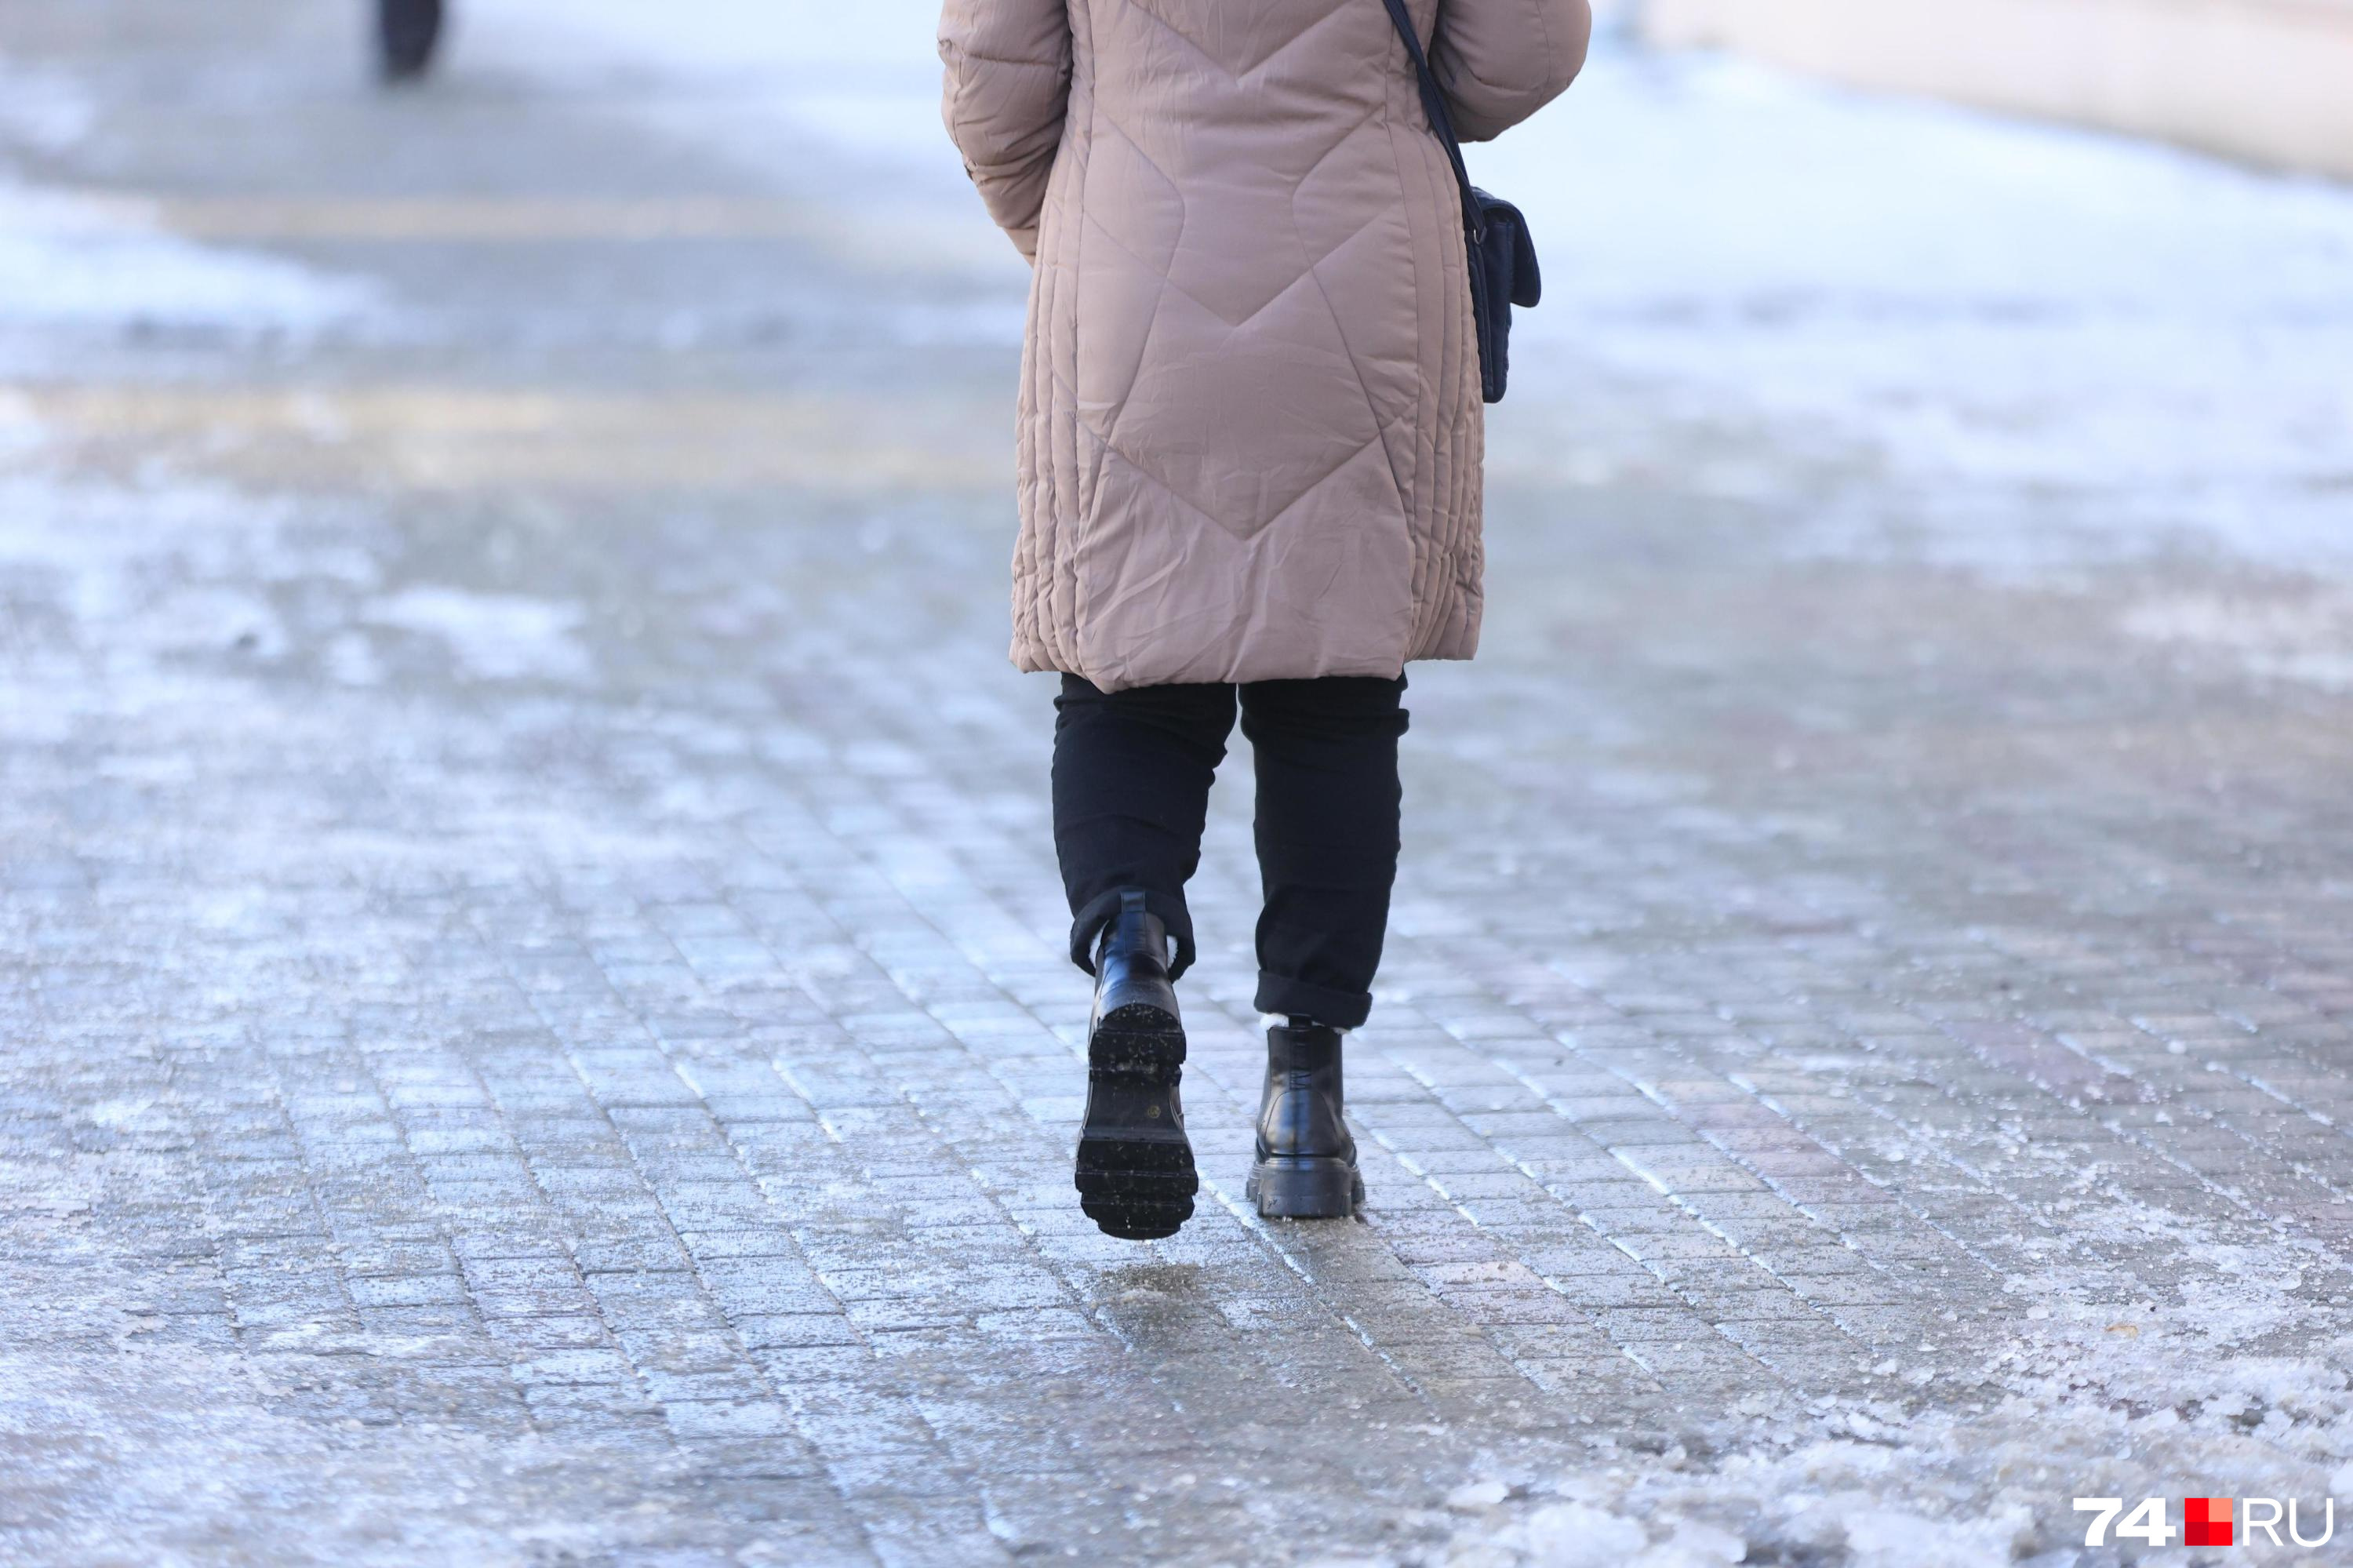 Пенсионерка отсудила у администрации Читы 70 тысяч рублей за падение на льду между жилыми домами